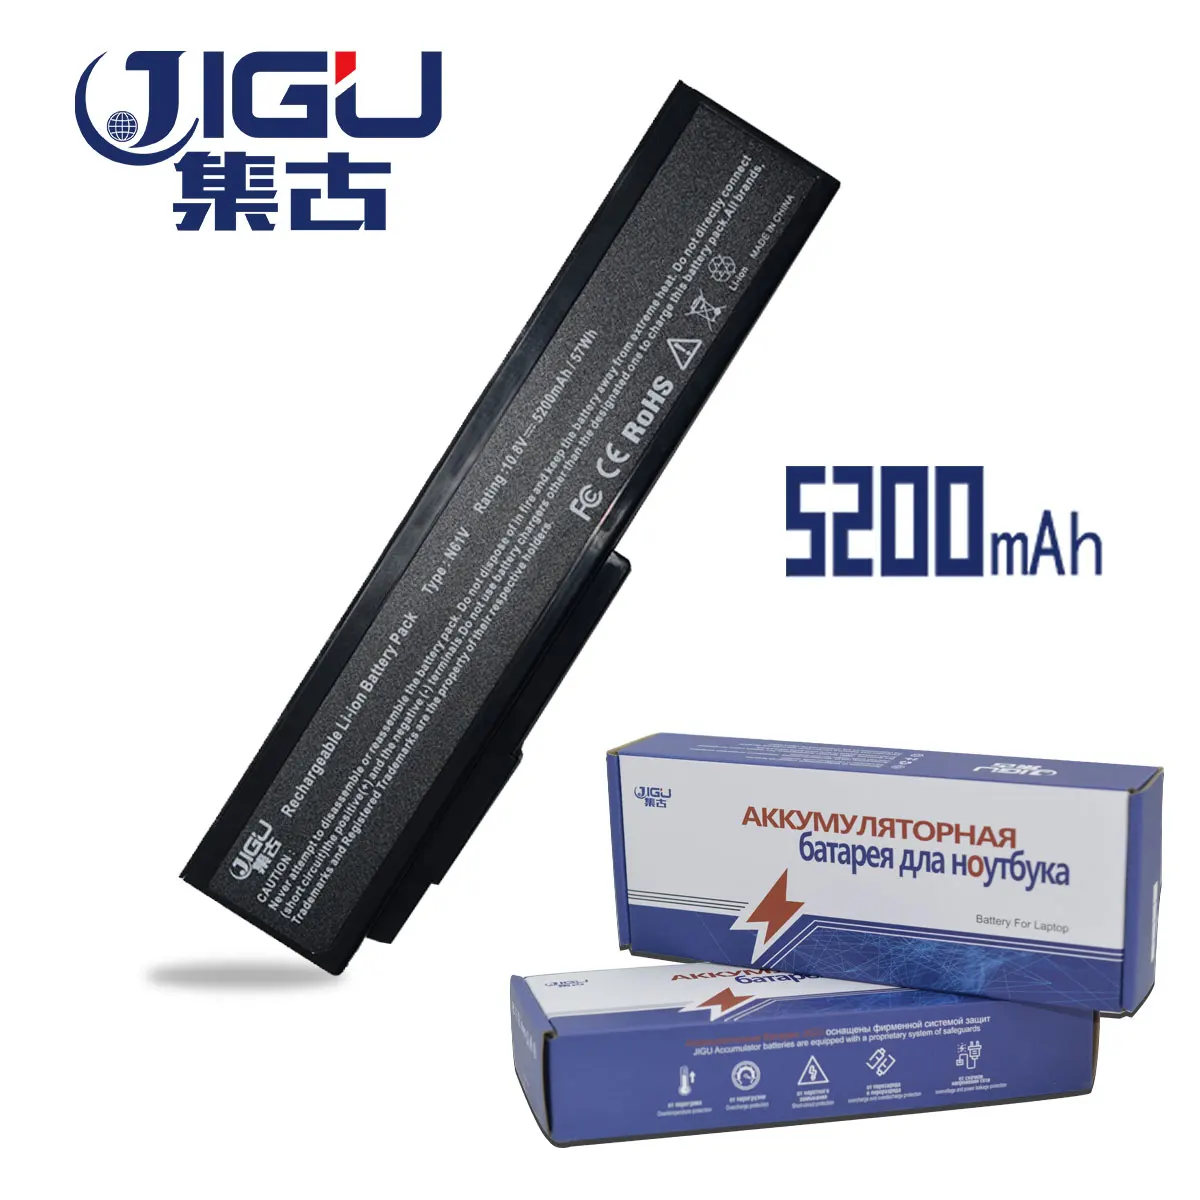 JIGU Аккумулятор для ноутбука ASUS N61 N61J N61Jq N61V N61Vg N61Ja N61JV N53 M50 M50s N53S A32-M50 A32-N61 A32-X64 A33-M50